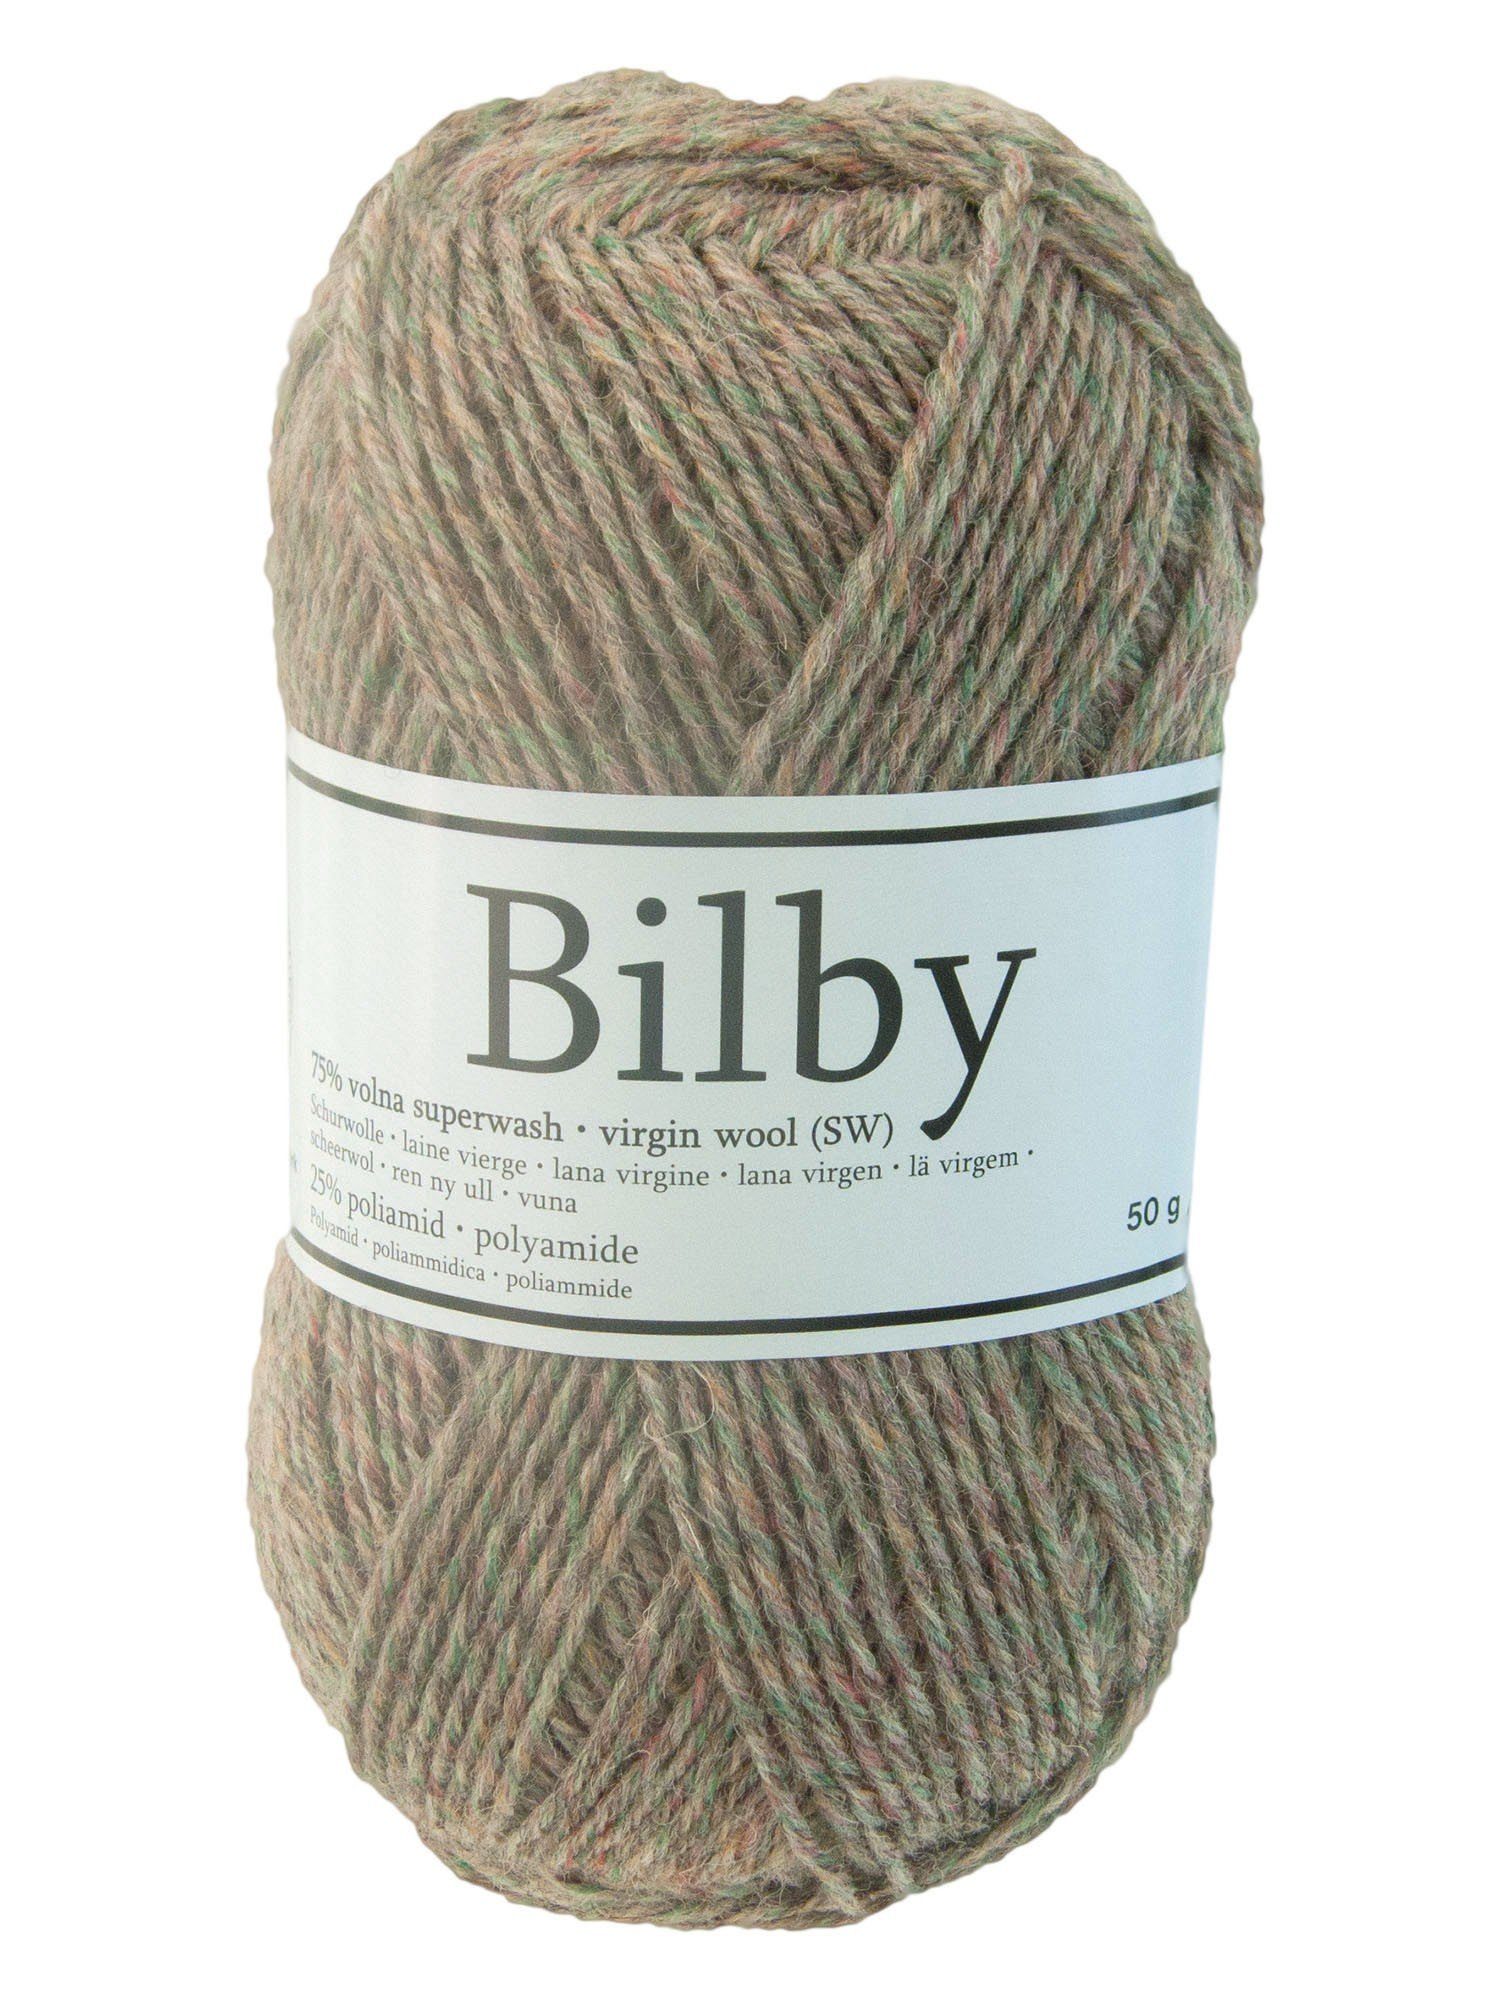 maDDma 50g Sockenwolle Bilby Countrystyle, verschiedene Farben Häkelwolle, 175 m, mehrfarbig 1